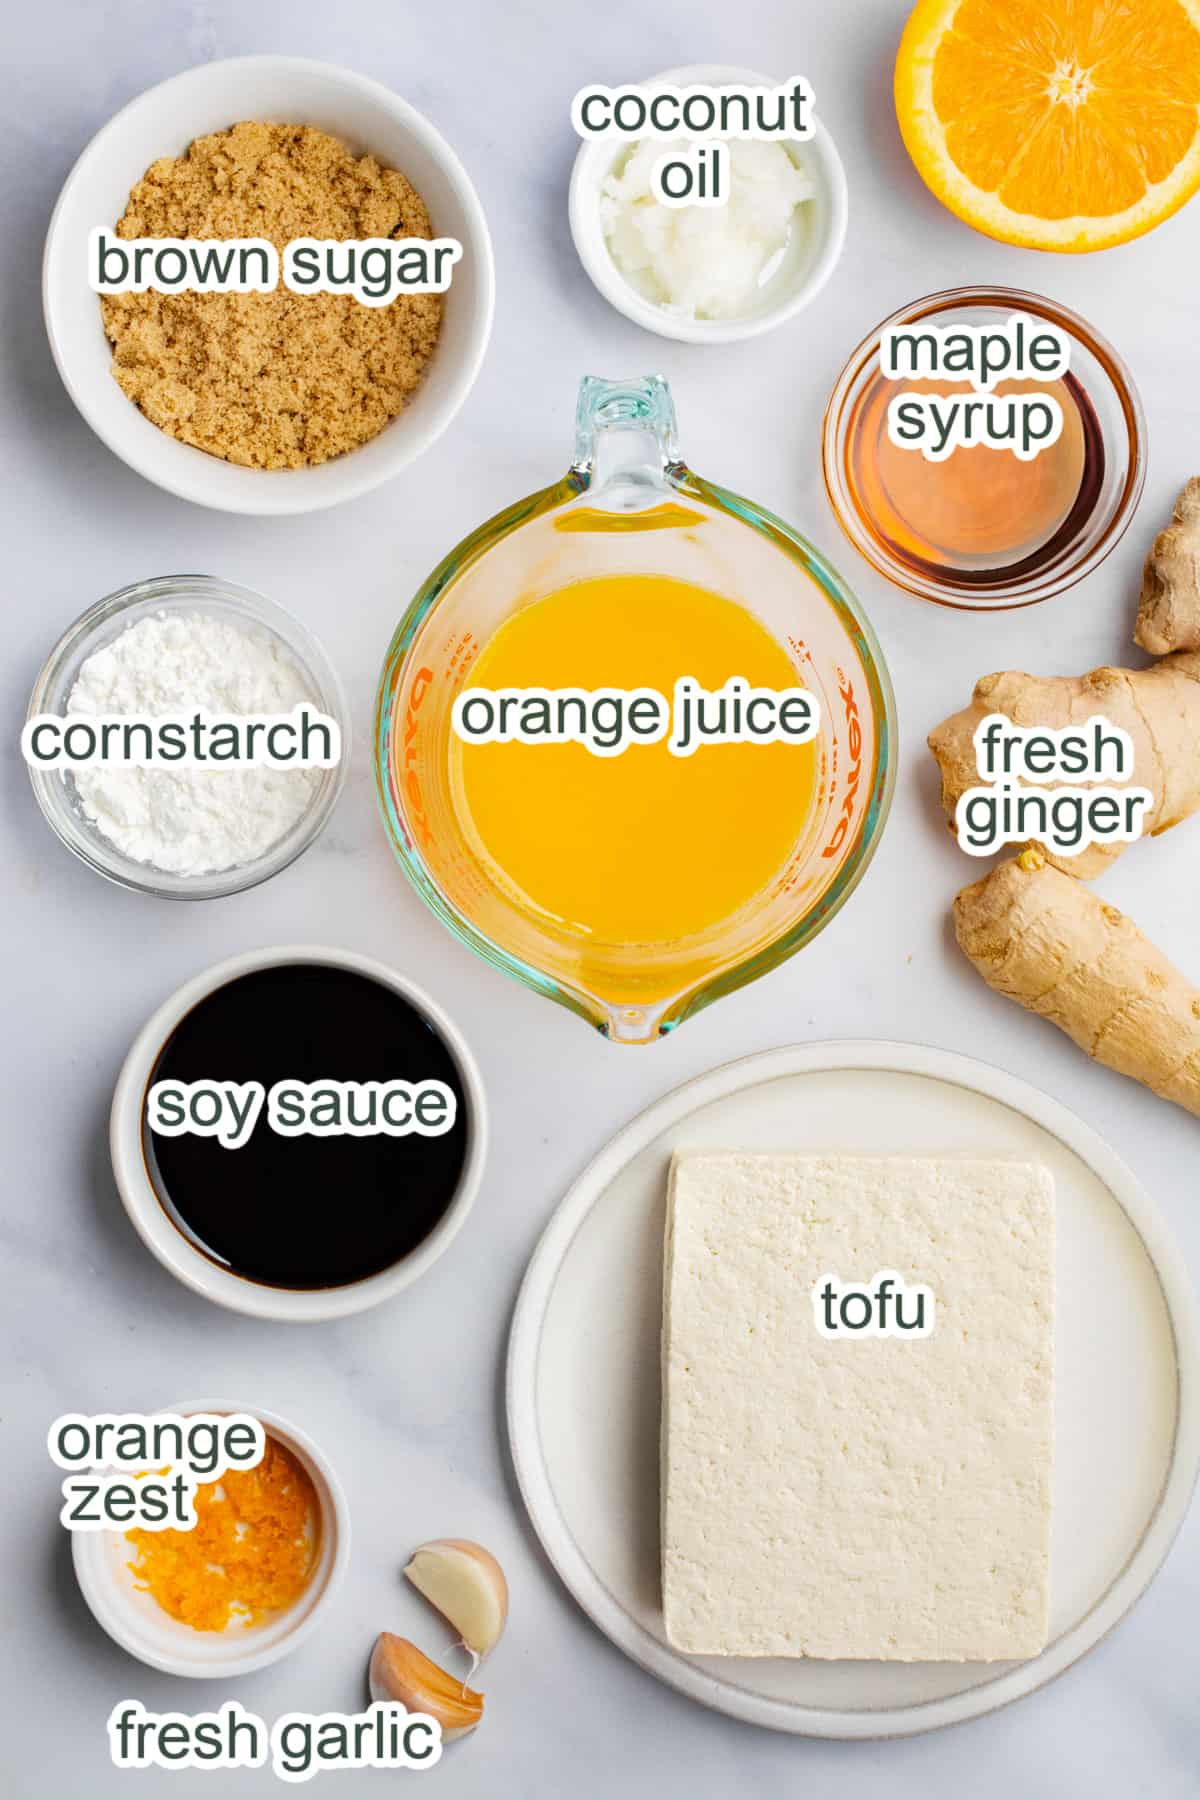 Ingredients in bowls to make vegan orange tofu.